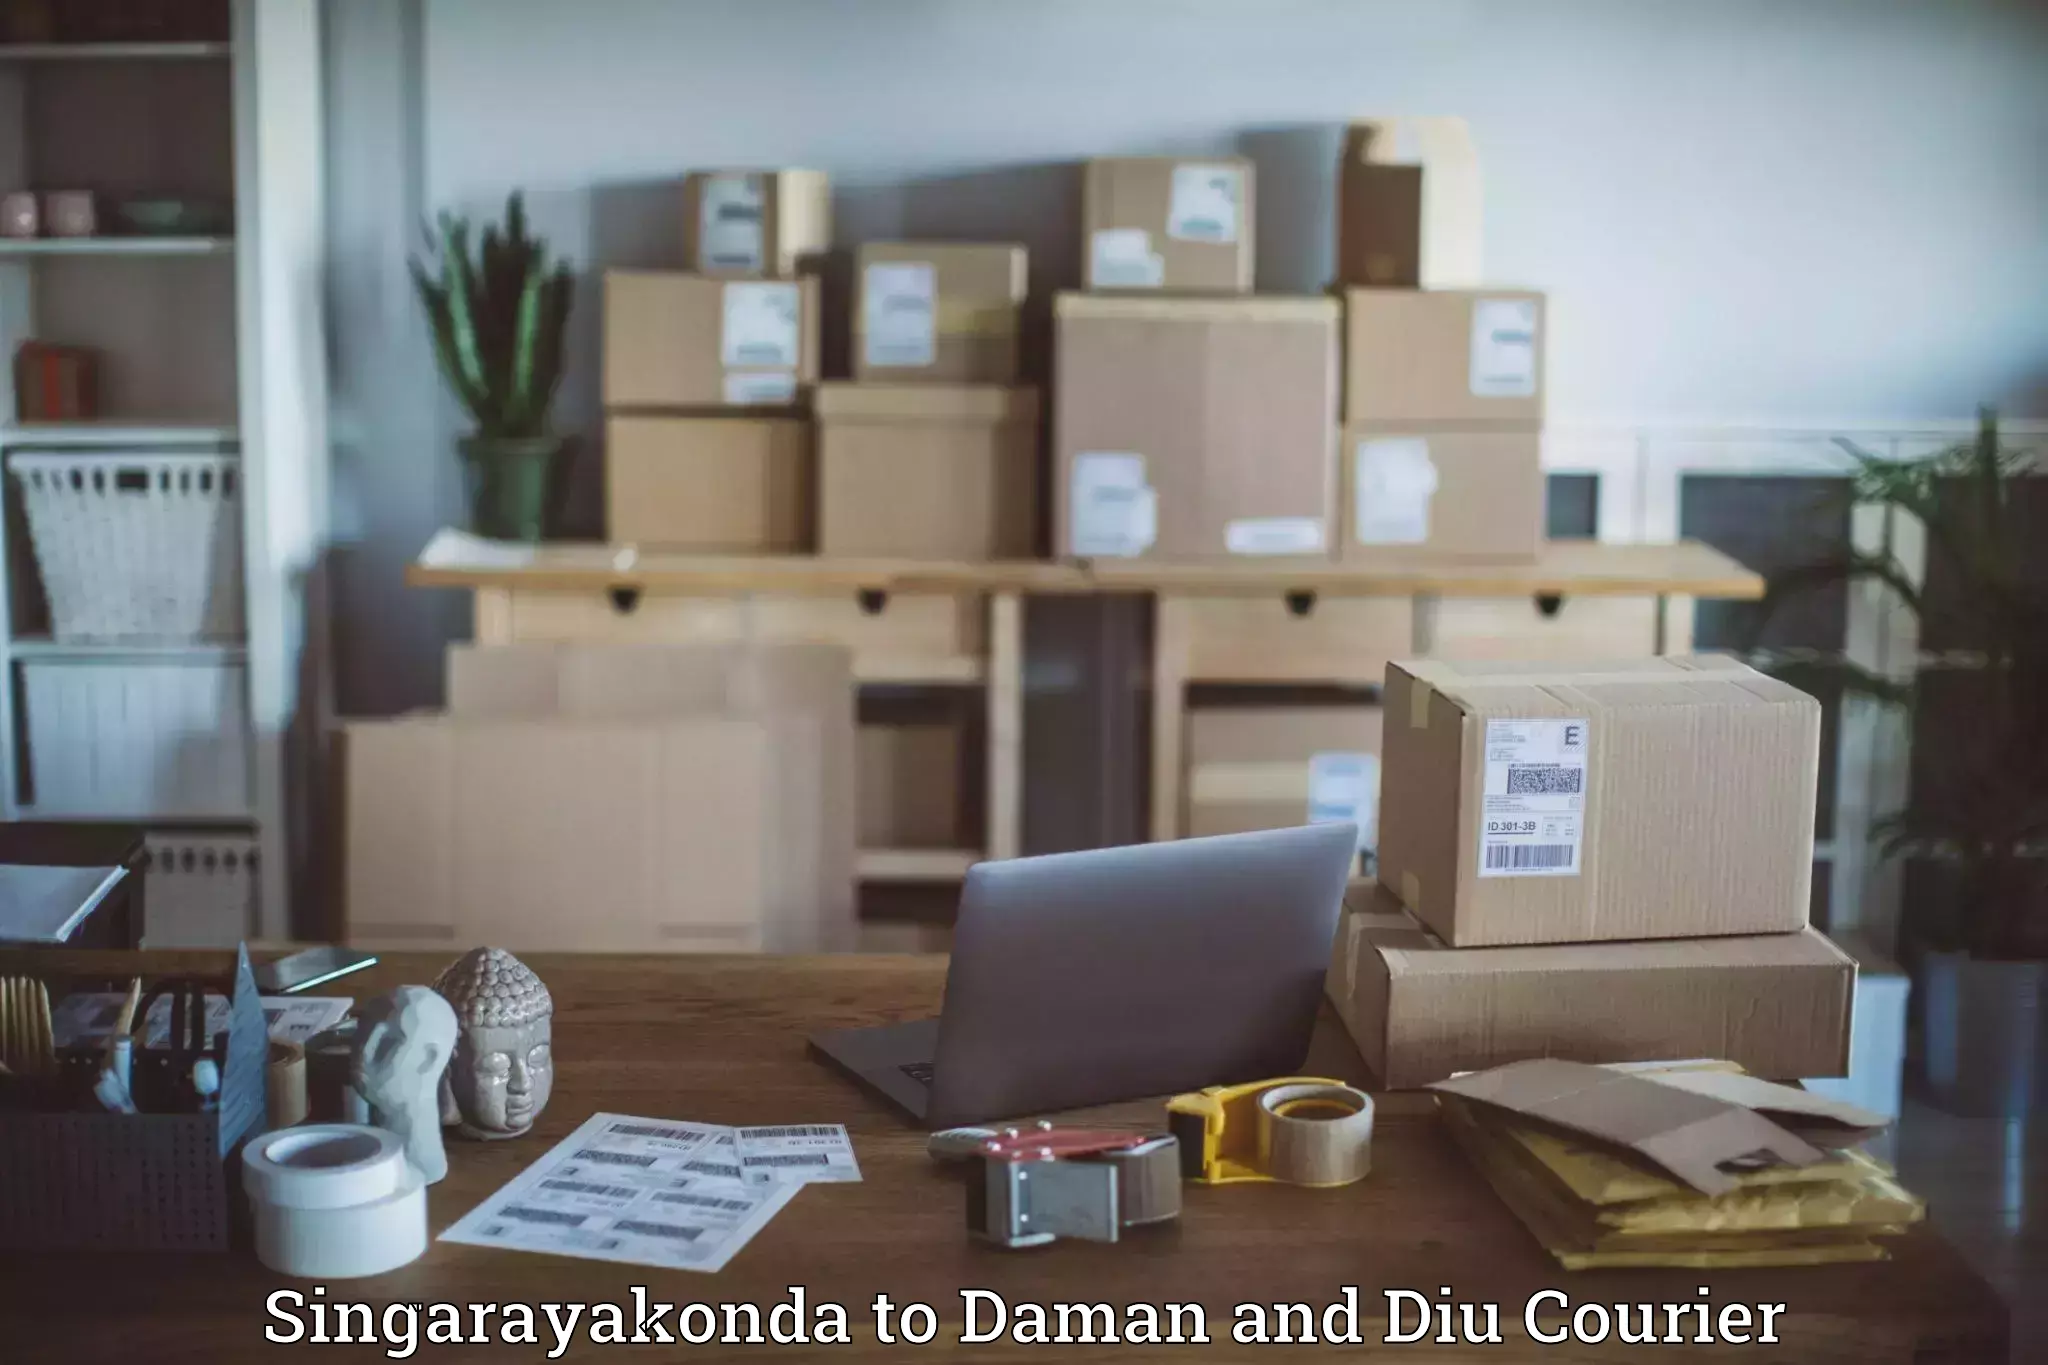 Business courier solutions Singarayakonda to Daman